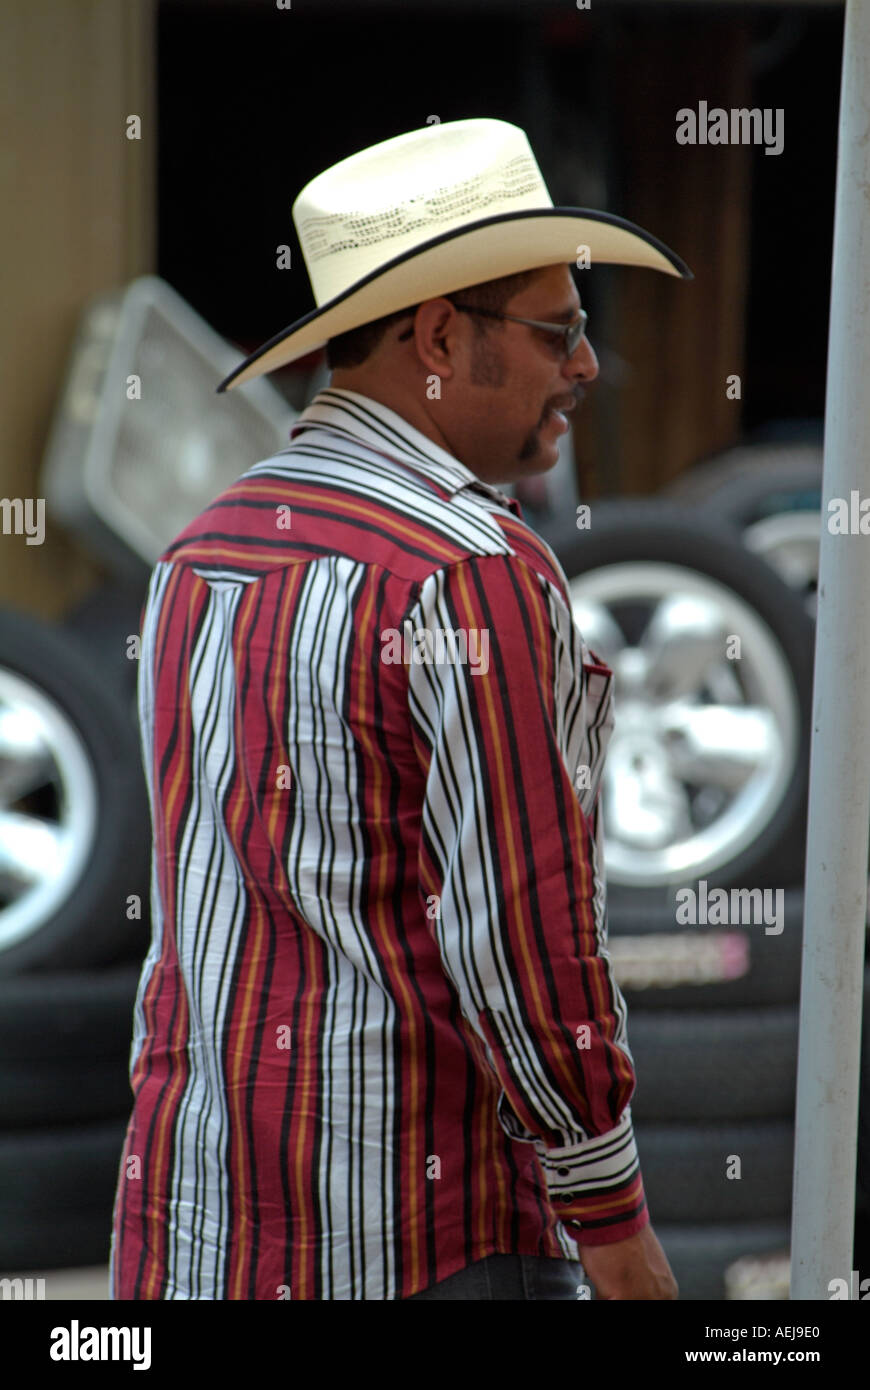 L'homme portant un chapeau Texan Photo Stock - Alamy